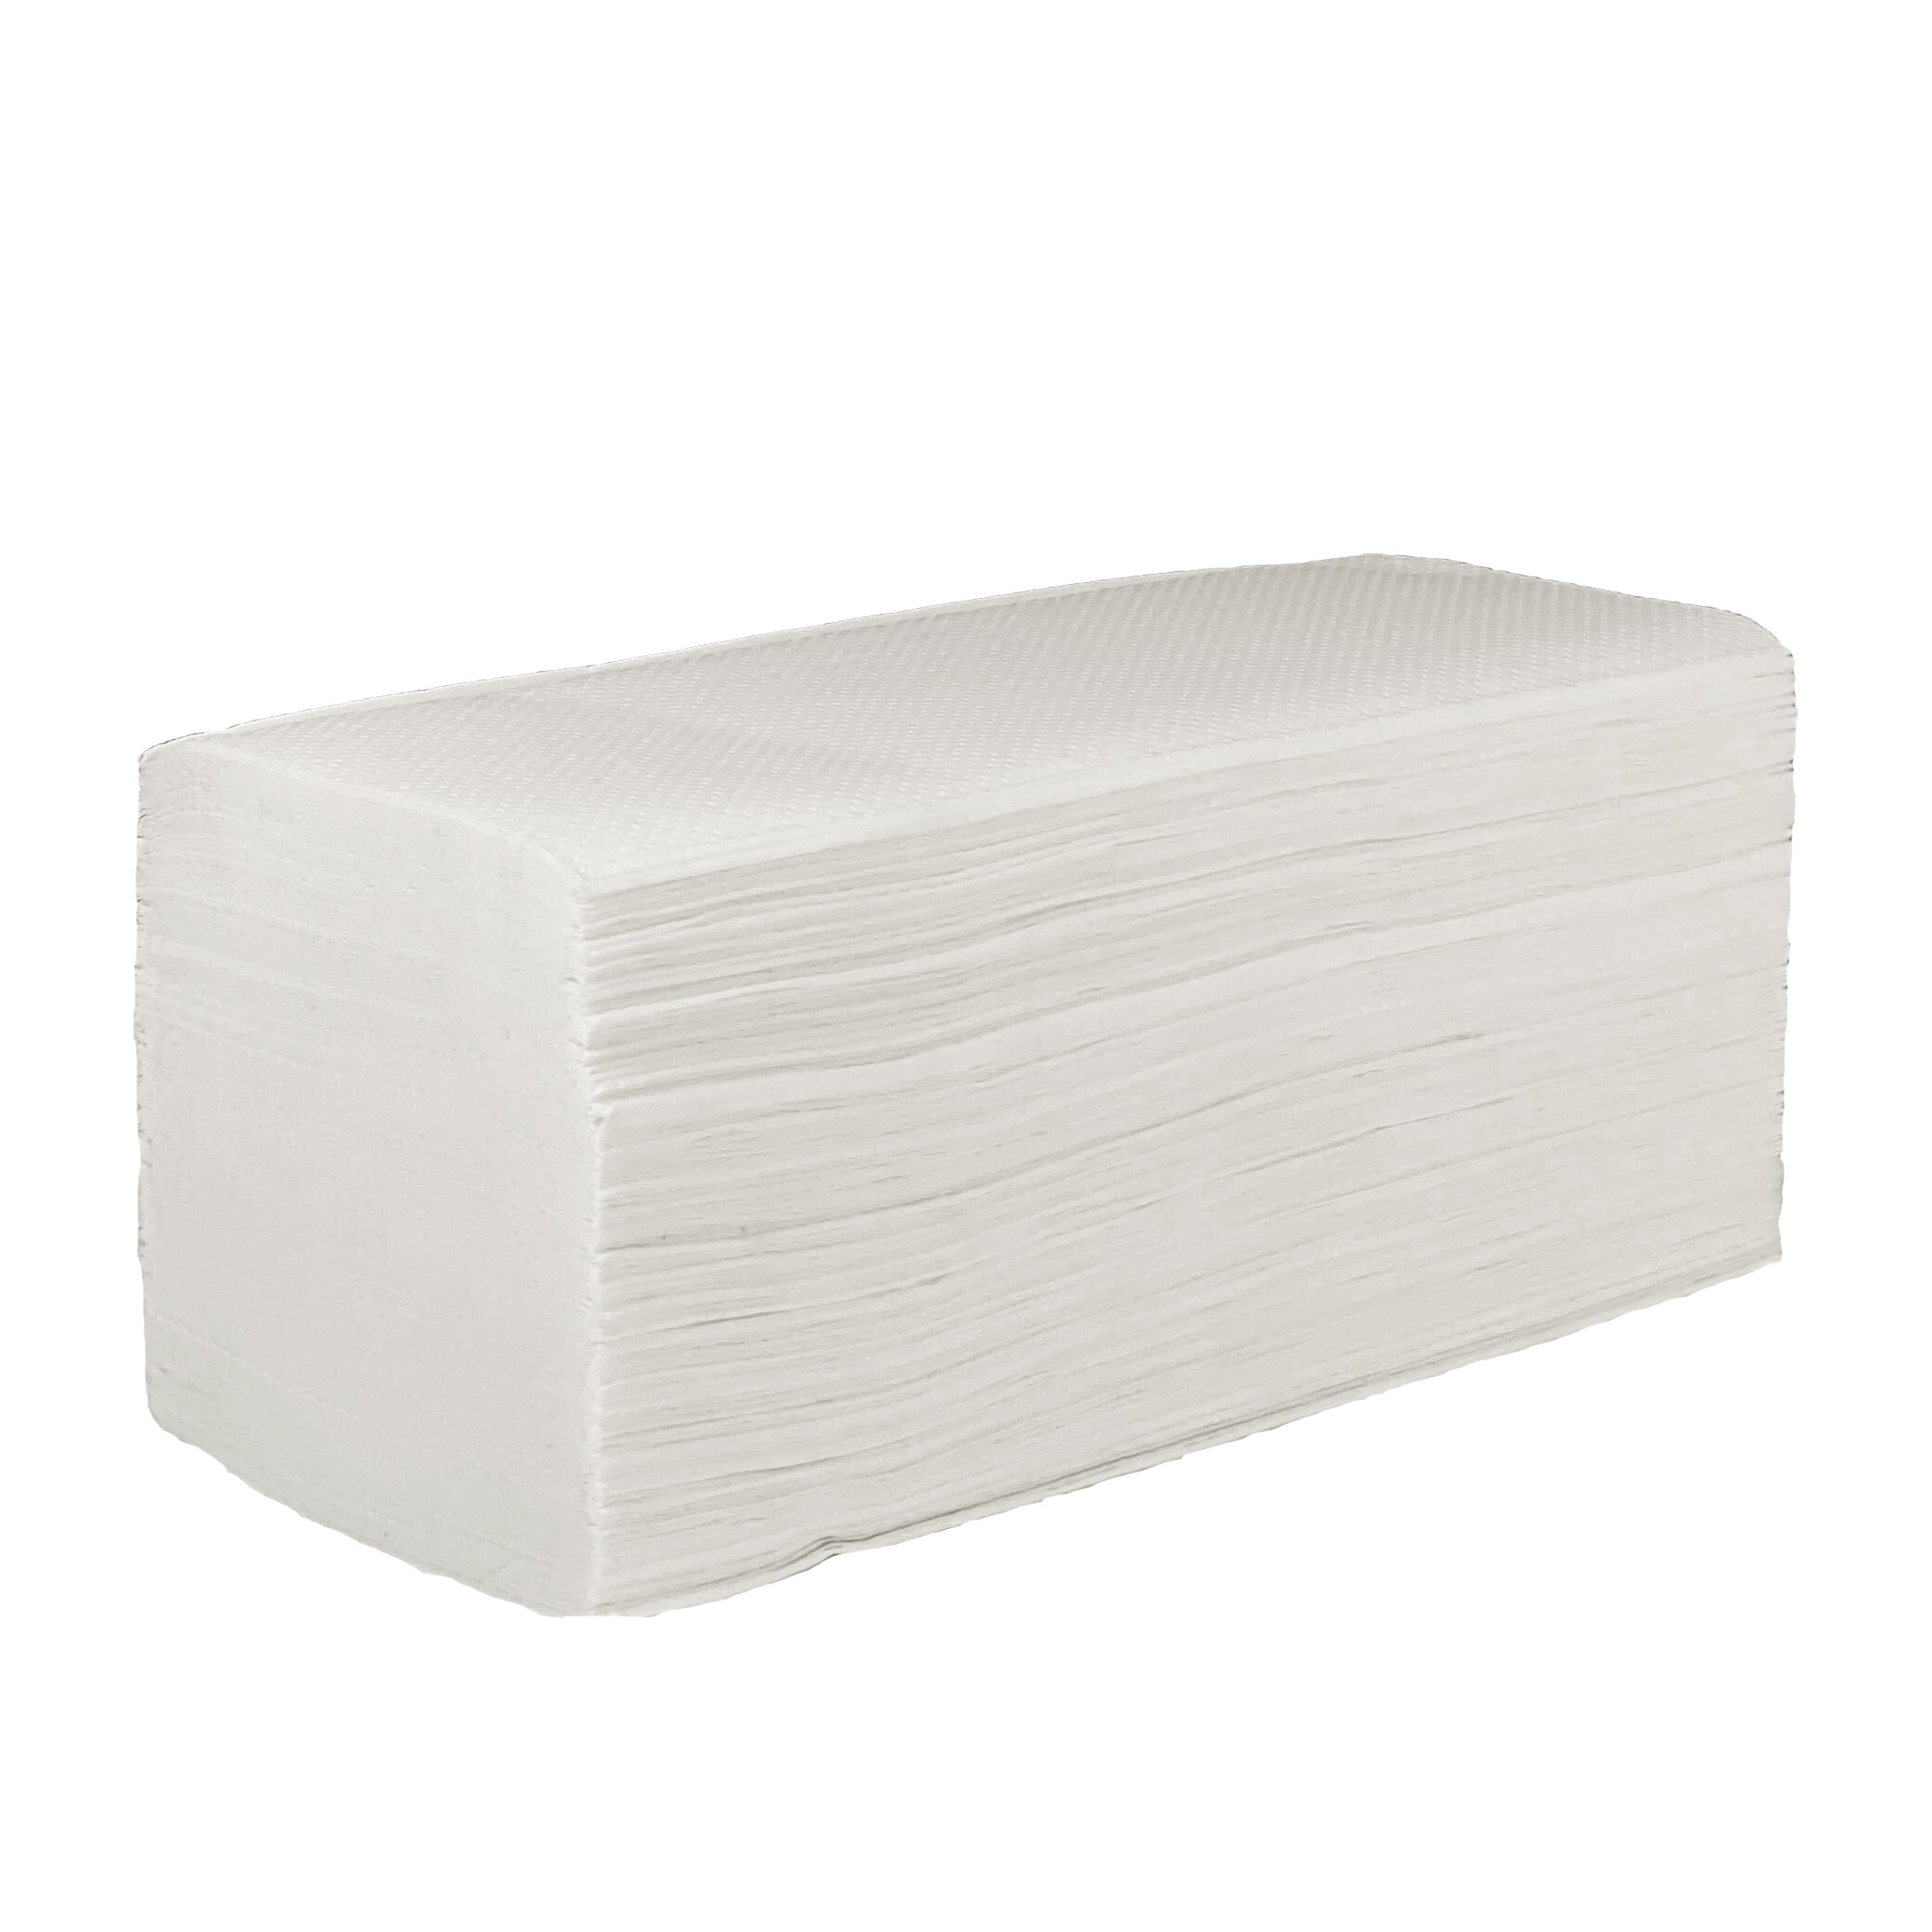 Falthandtücher V-Falz, 2-lagig, 3200 Blatt - Zellulose - Weiß